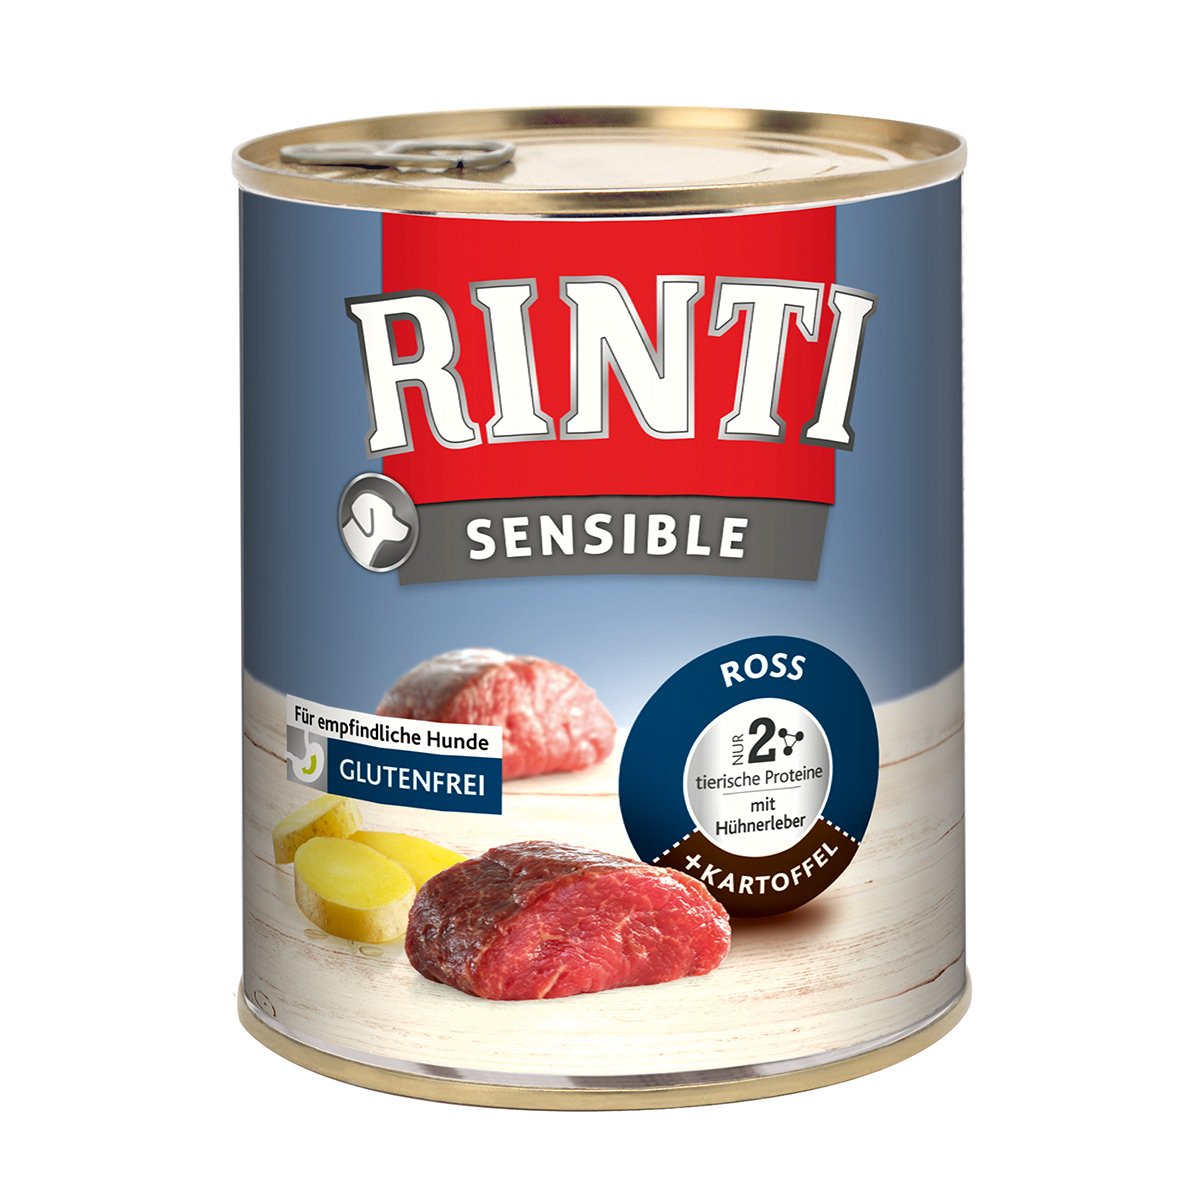 Rinti Sensible Ross & Hühnerleber & Kartoffel 6x800g von Rinti